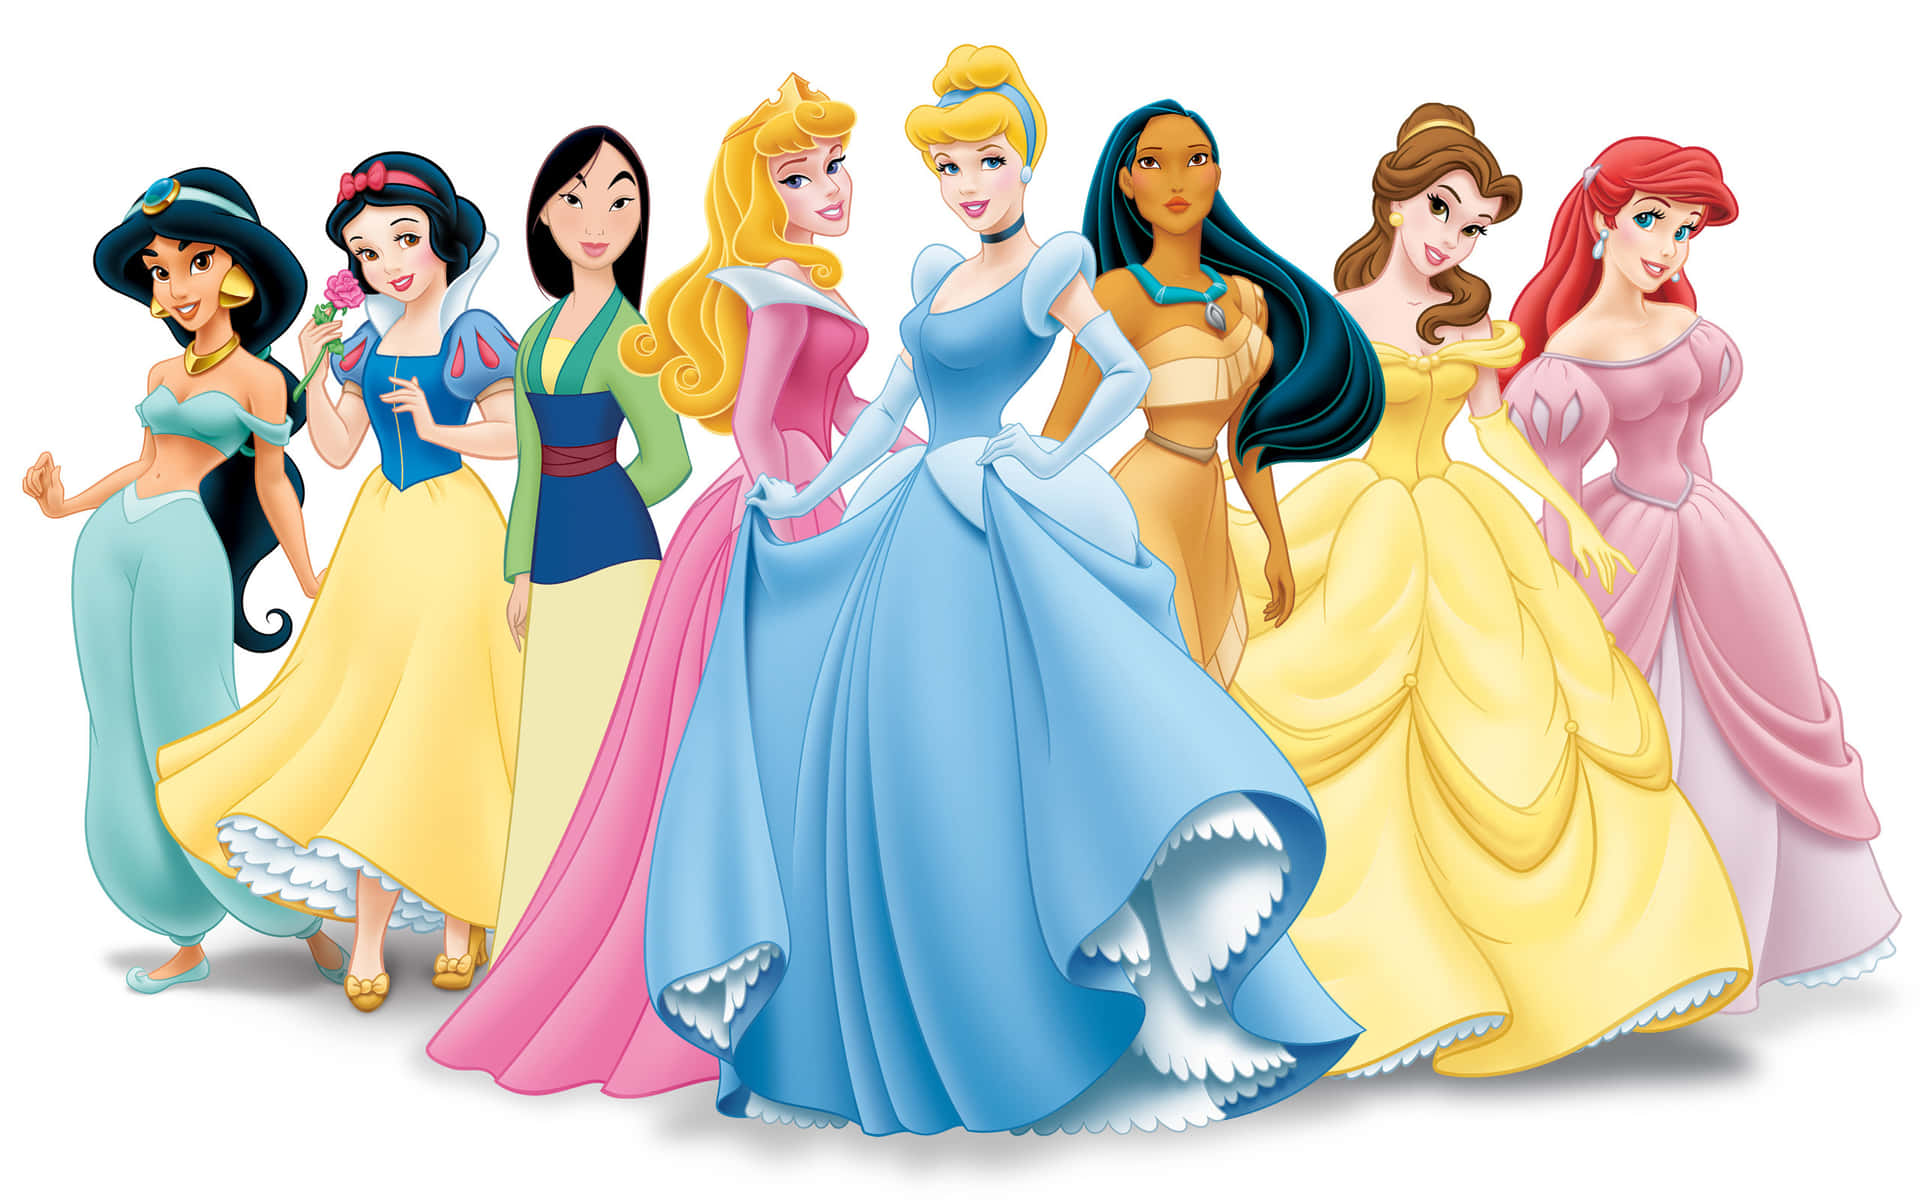 Unascena Delle Principesse Disney Che Festeggiano Insieme.